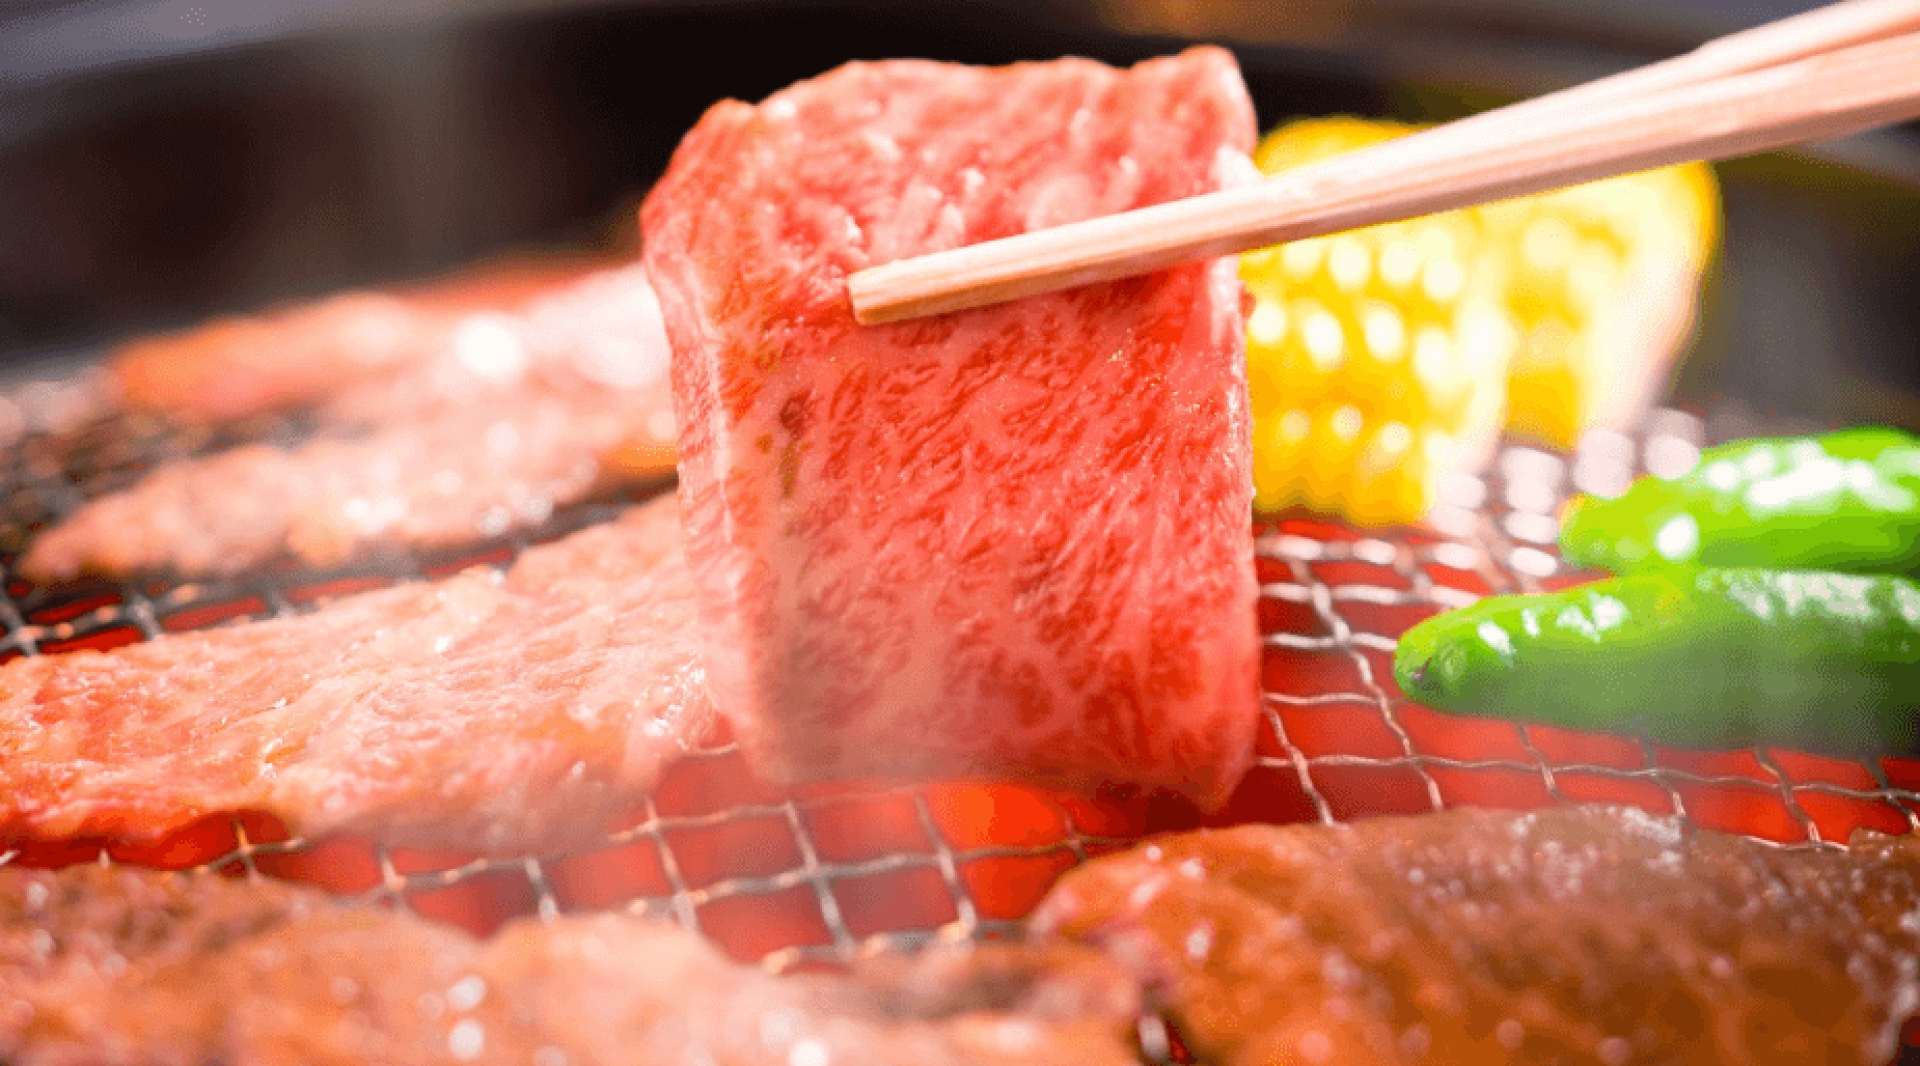  【銀座美食】人氣烤肉店銀座炎蔵・高級和牛 